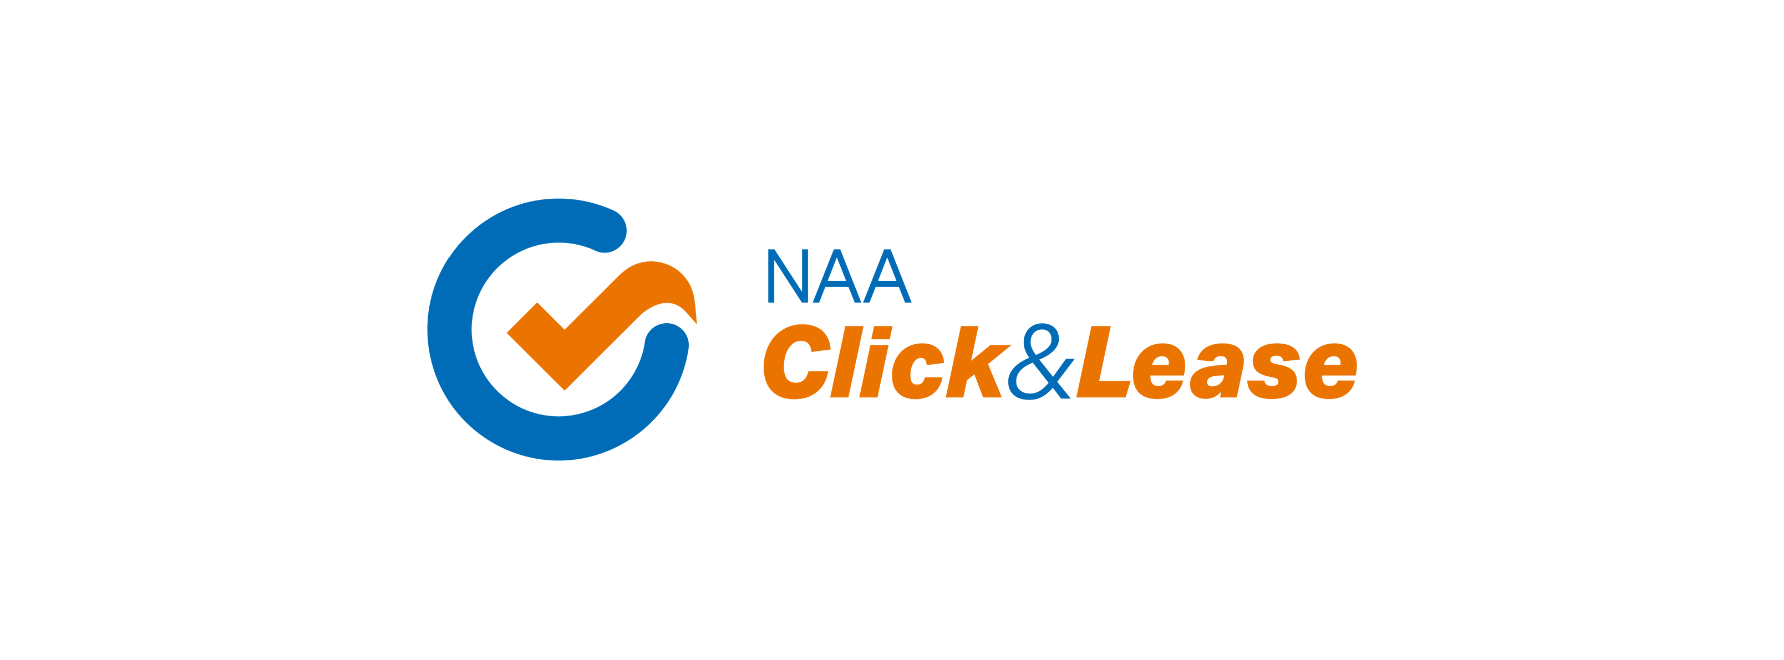 naa click & lease logo